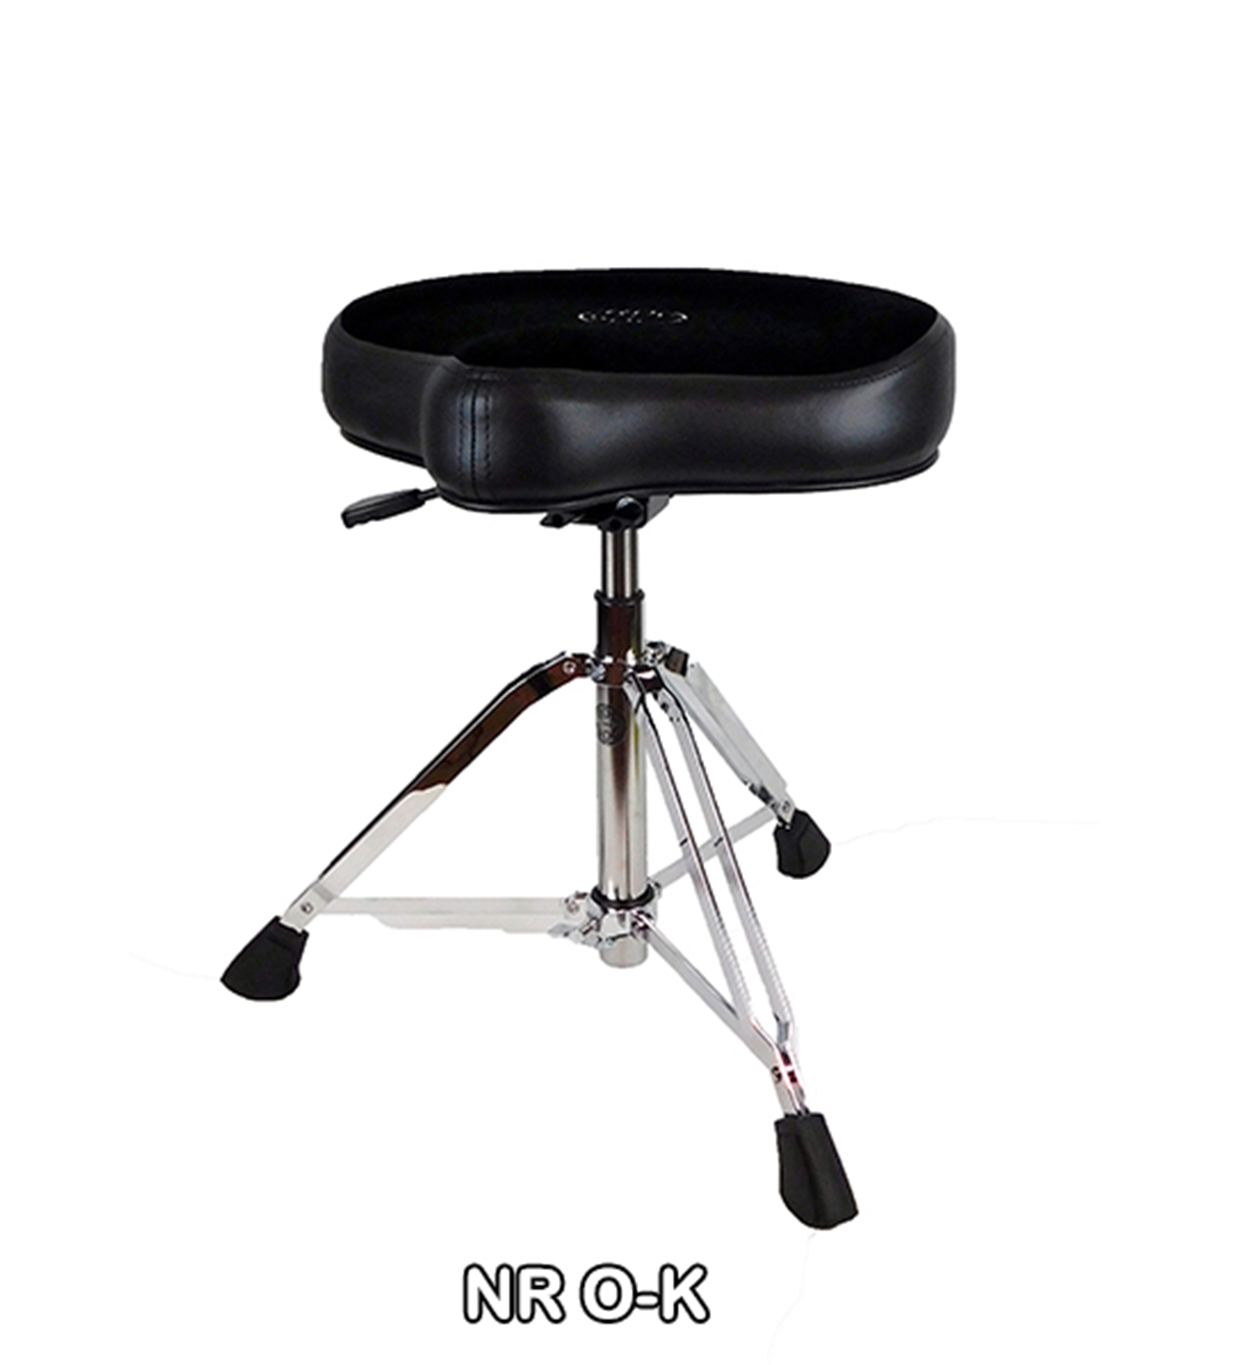 Roc N Soc Nitro Hydraulic throne - Original Black seat